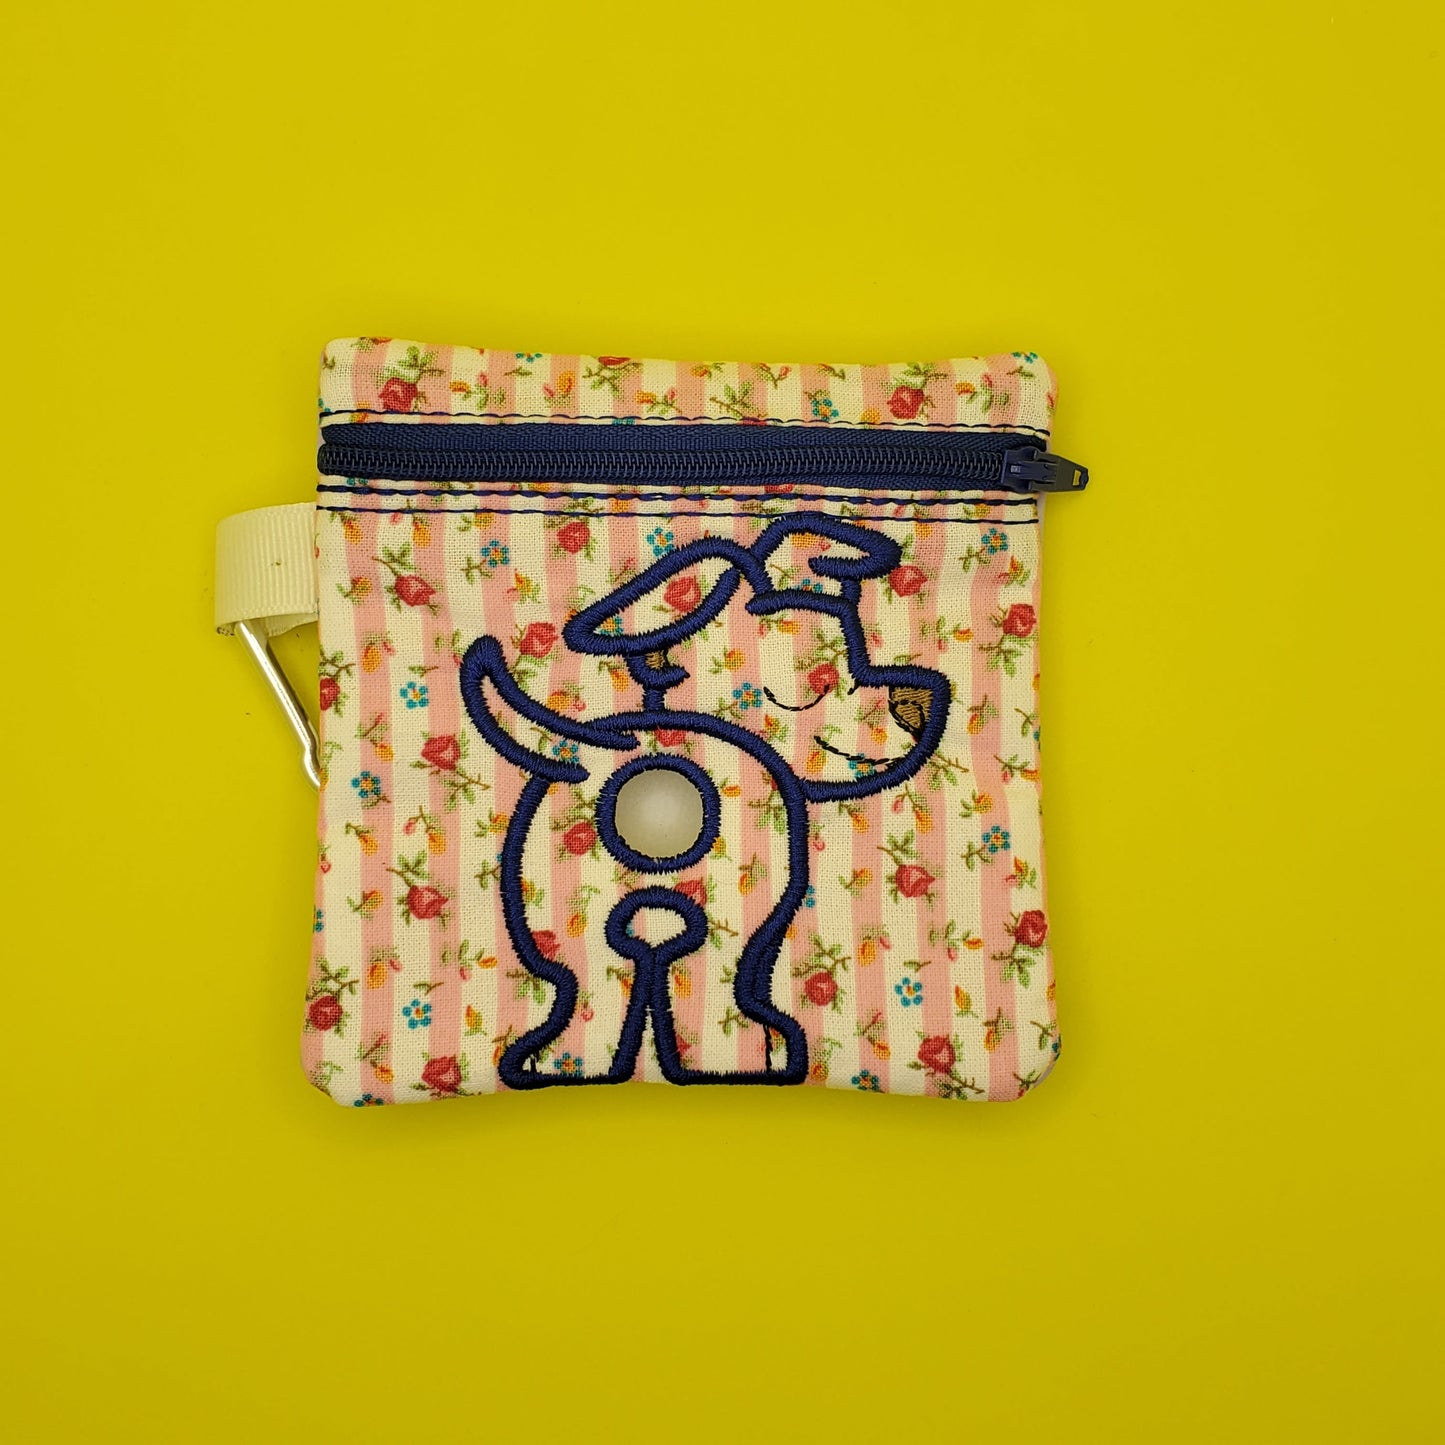 Pitbull Dog Poo bag holder, embroidered on Floral Bag